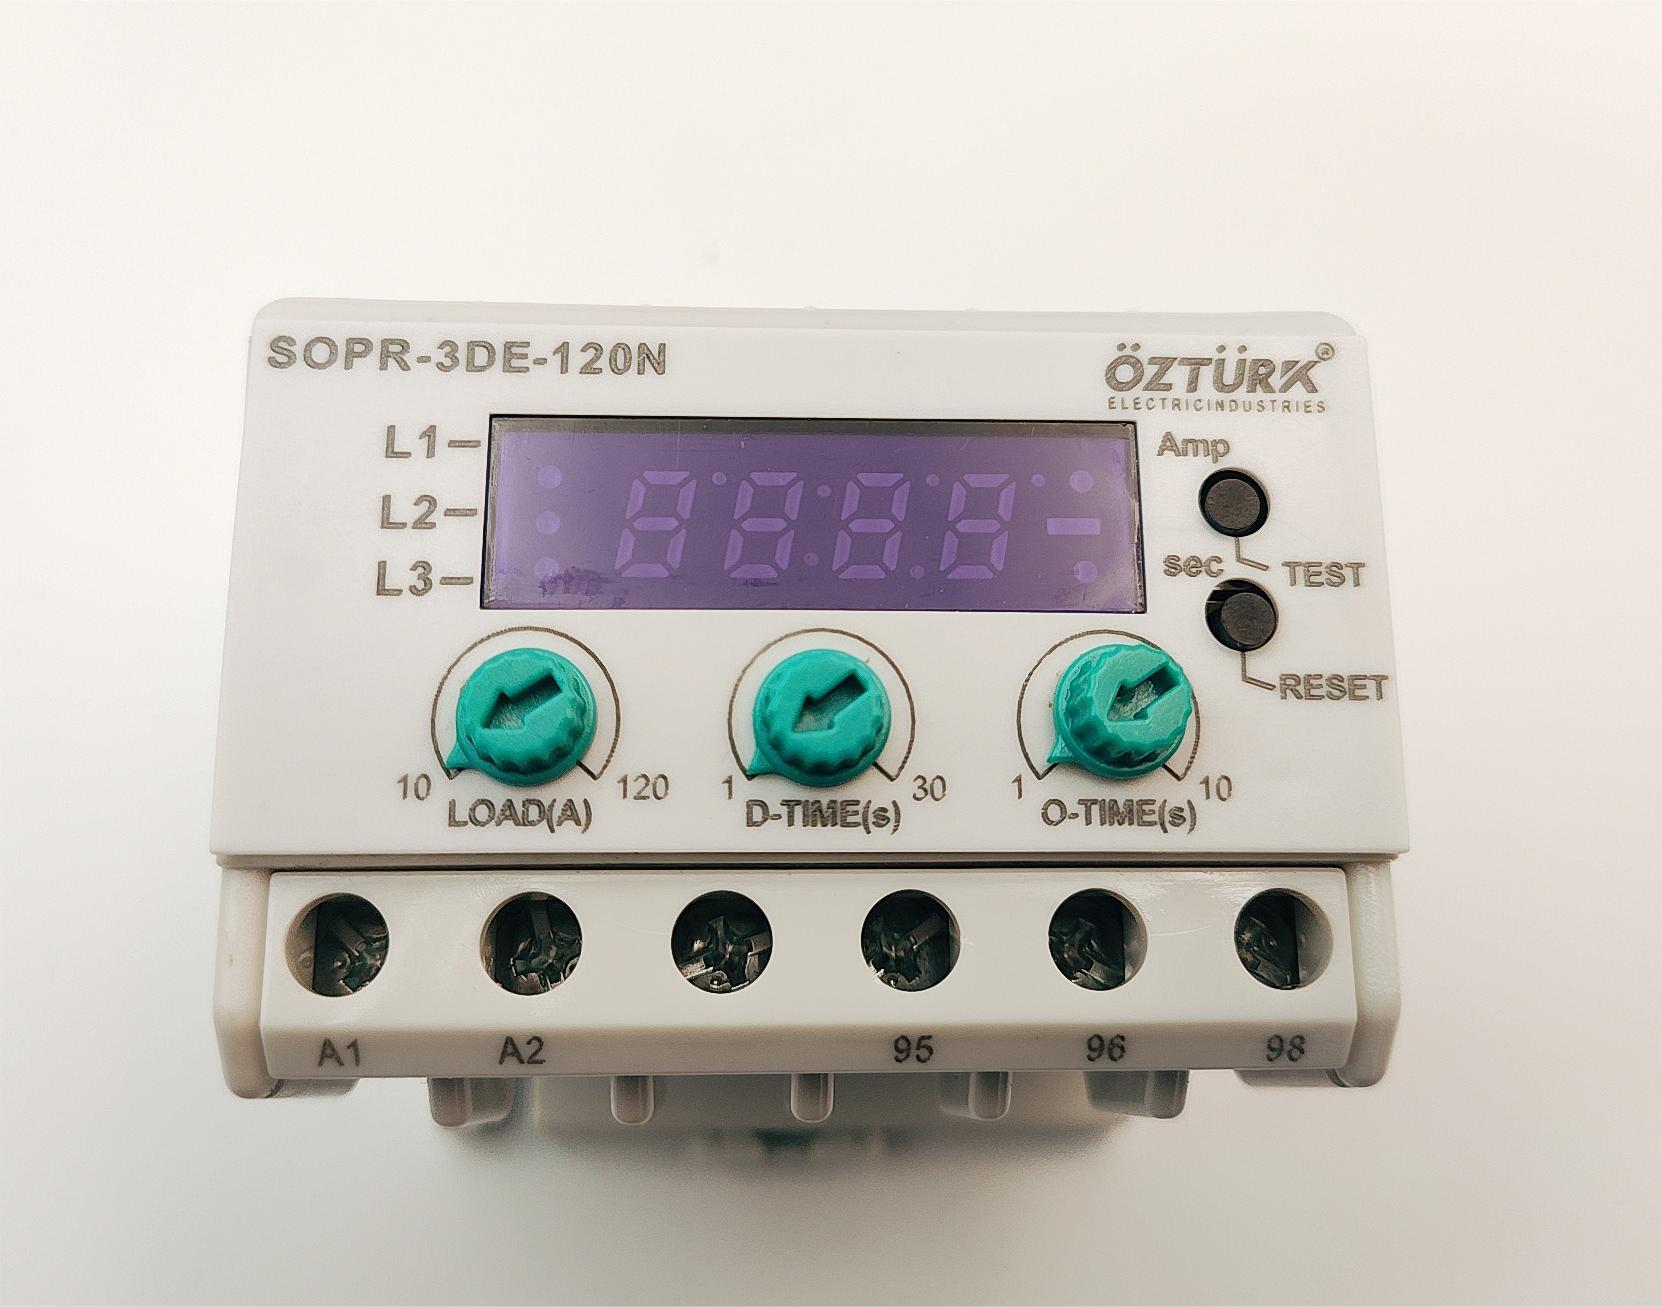 OZTURK热继电器SOPR-3DE-120N详情图1